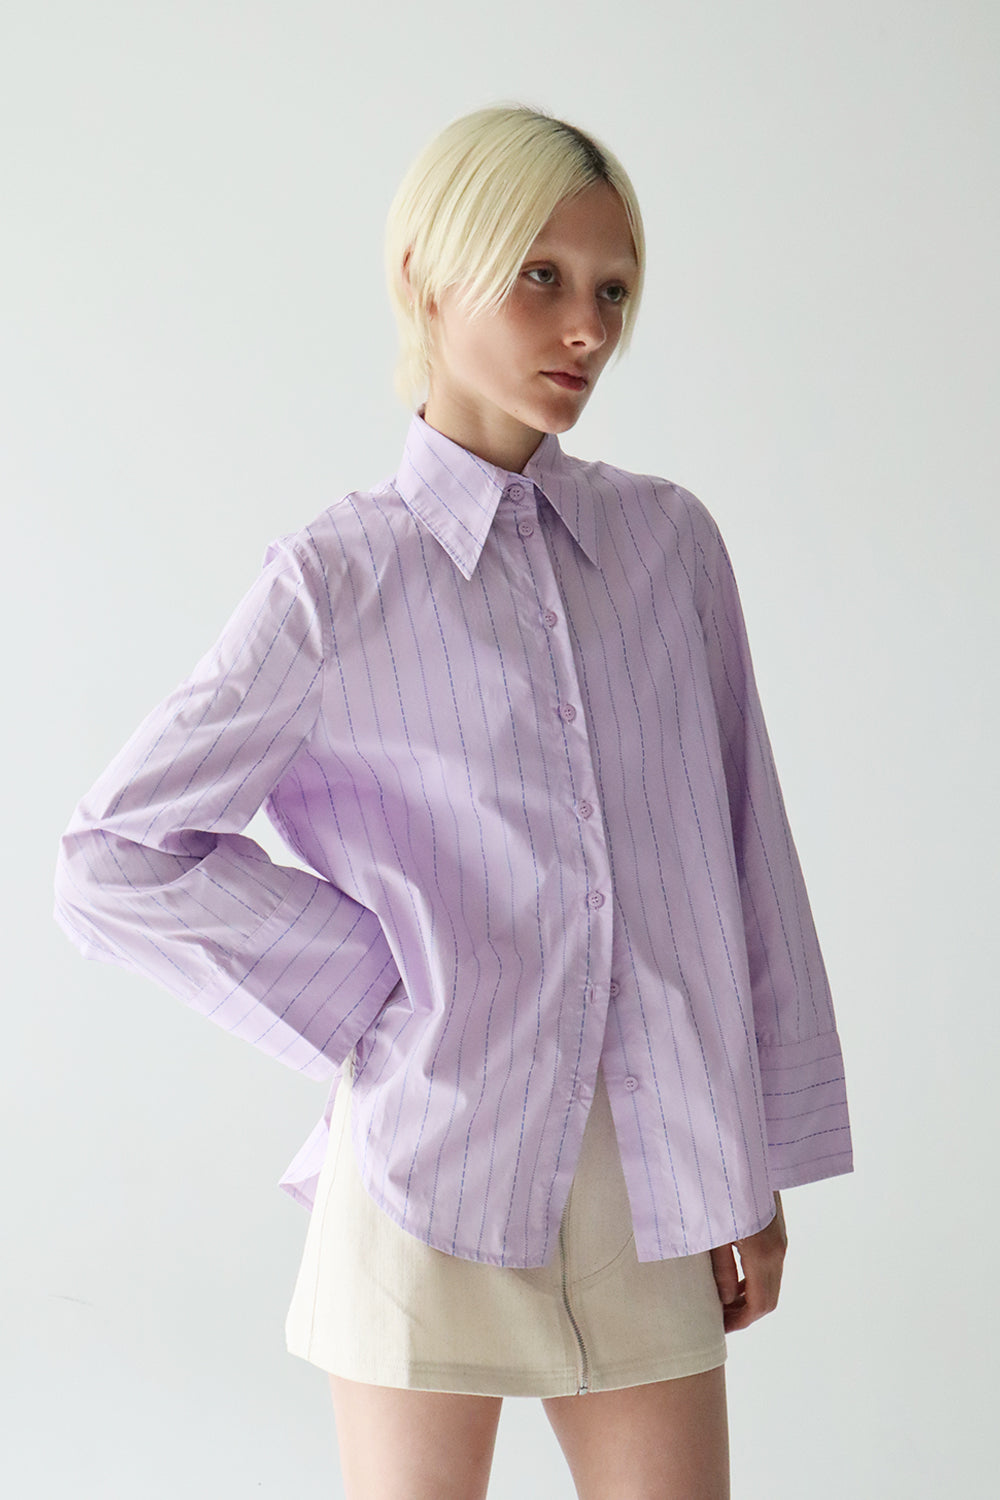 Fern Shirt in Lilac